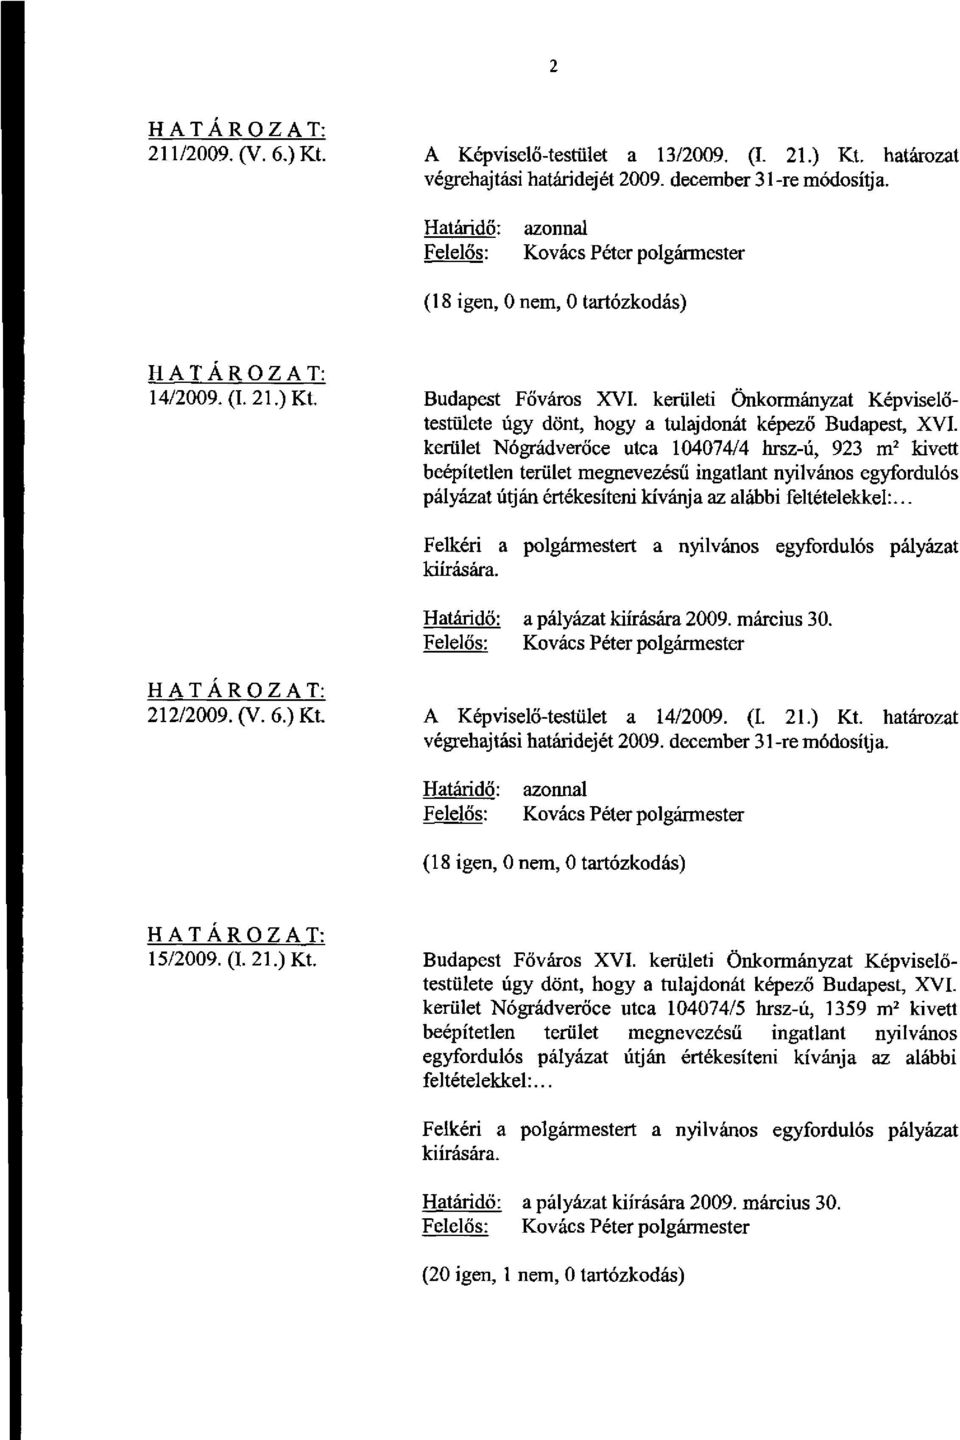 az alábbi feltételekkel:... a pályázat kiírására 2009. március 30. 212/2009. (V. 6.) Kt. A Képviselő-testület a 14/2009. (I. 21.) Kt. határozat (18 igen, 0 nem, 0 tartózkodás) 15/2009. (I. 21.) Kt. Budapest Főváros XVI.